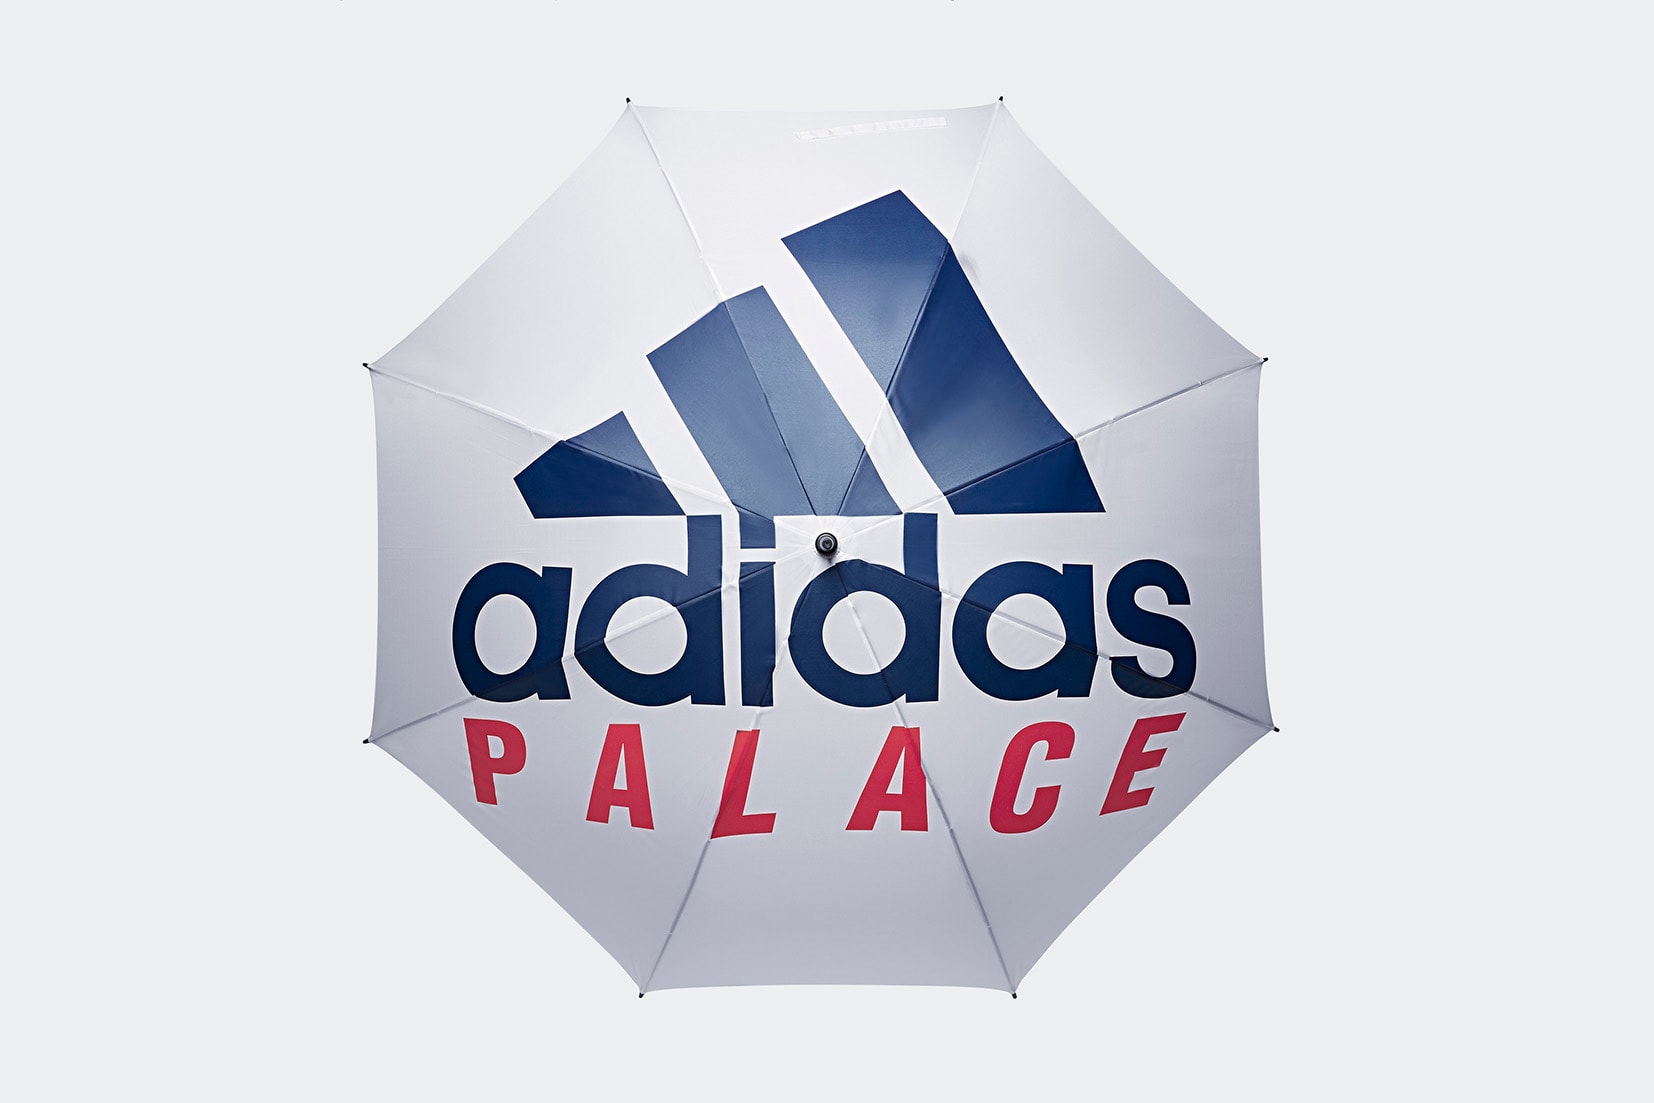 Palace x adidas 2018 網球主題聯名系列完整單品一覽